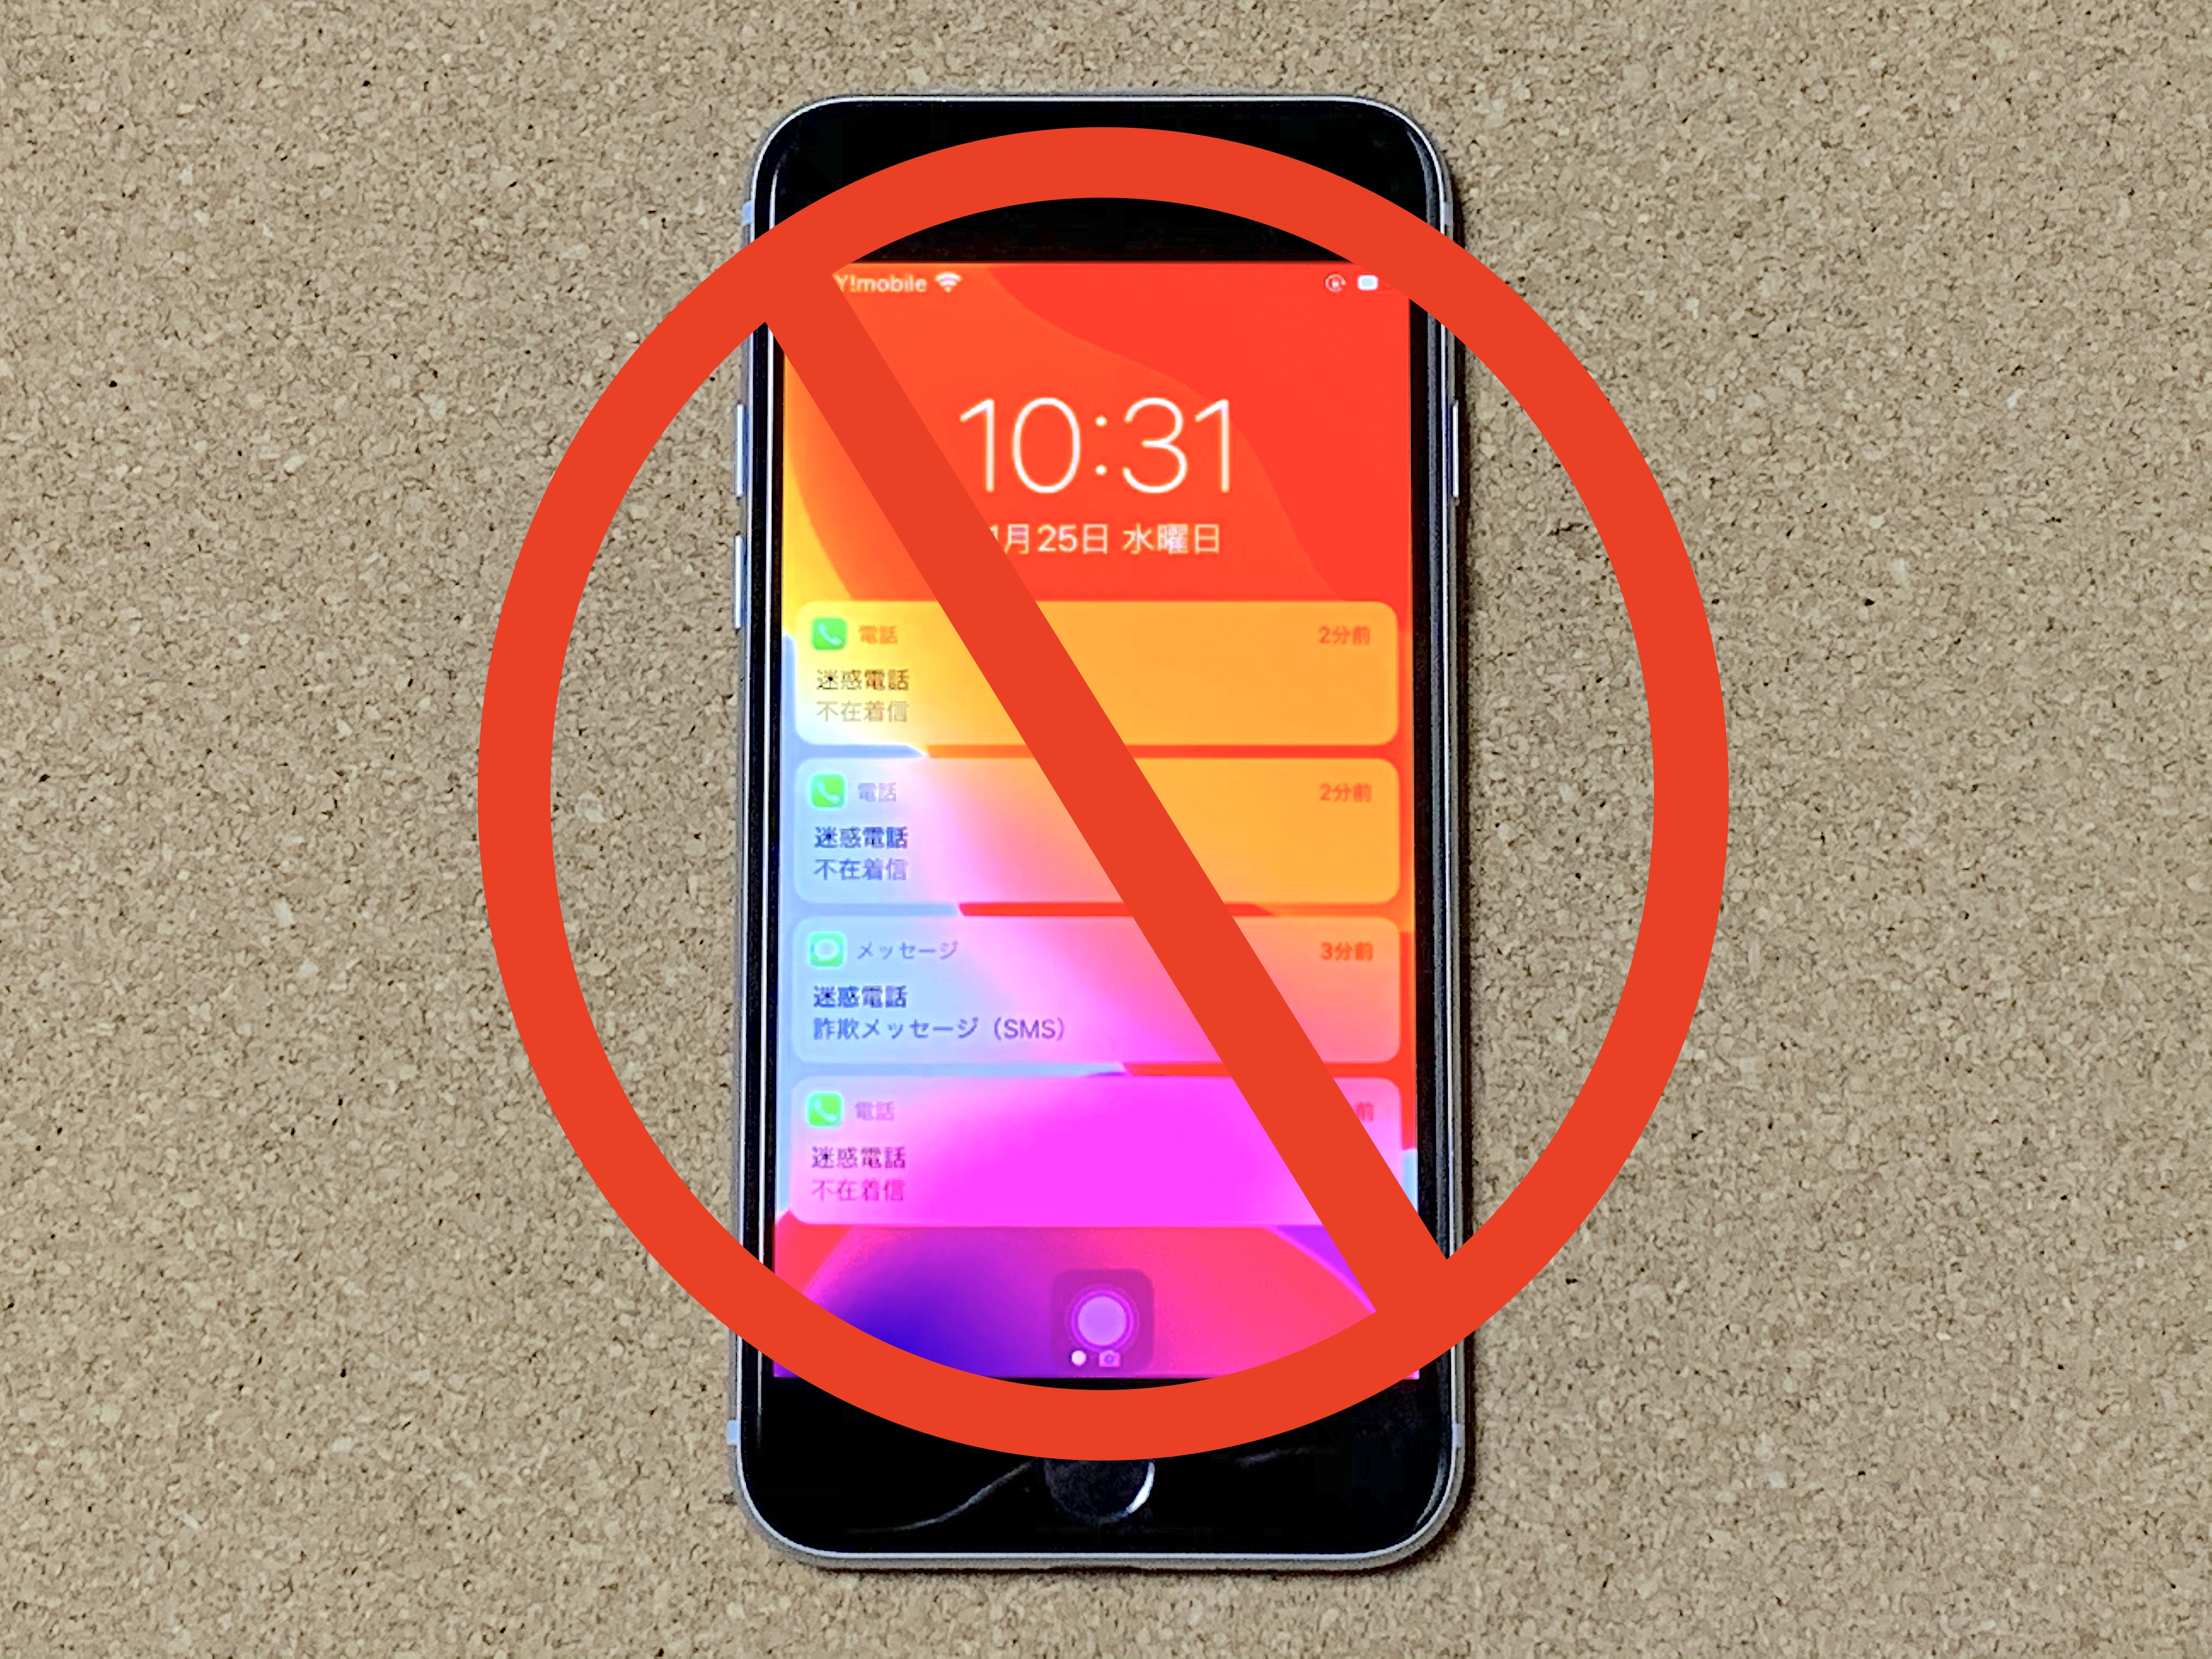 これで撃退 もう一度見直したい迷惑な電話やメール 不審なsmsへの対処法 Iphone Tips Engadget 日本版